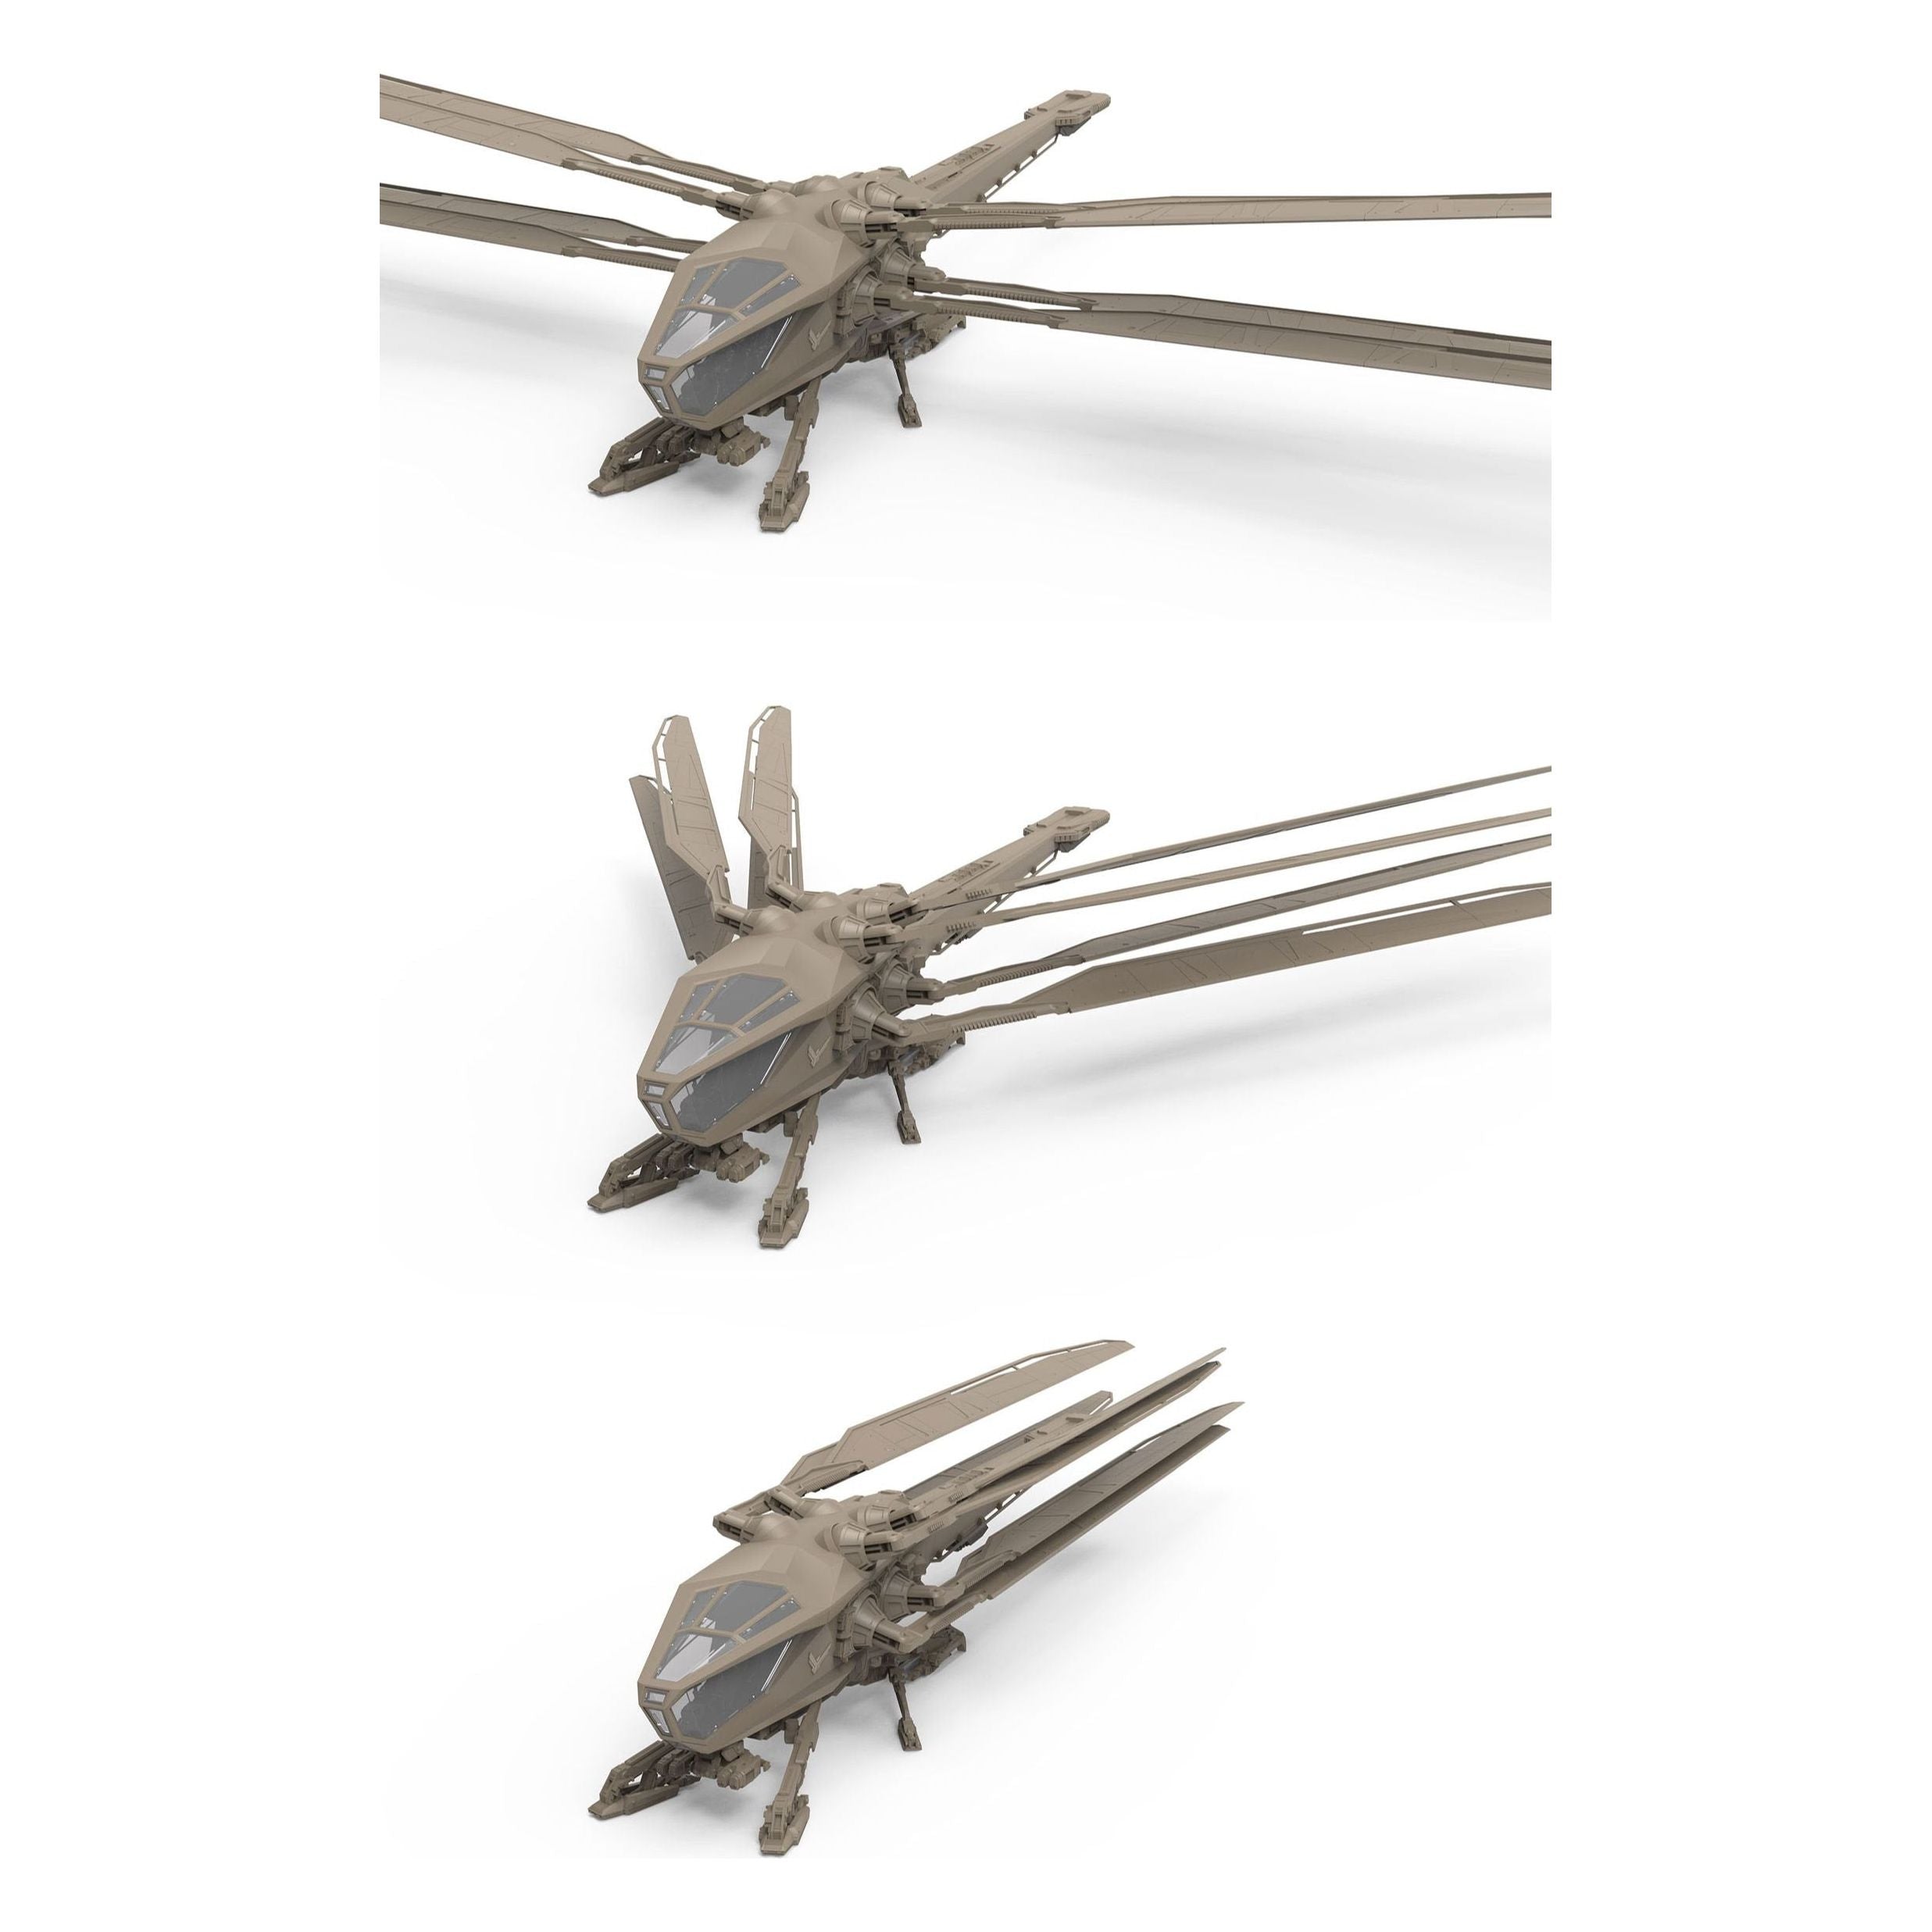 Meng 1/72 Dune Atreides Ornithopter Plastic Model Kit [DS-007]